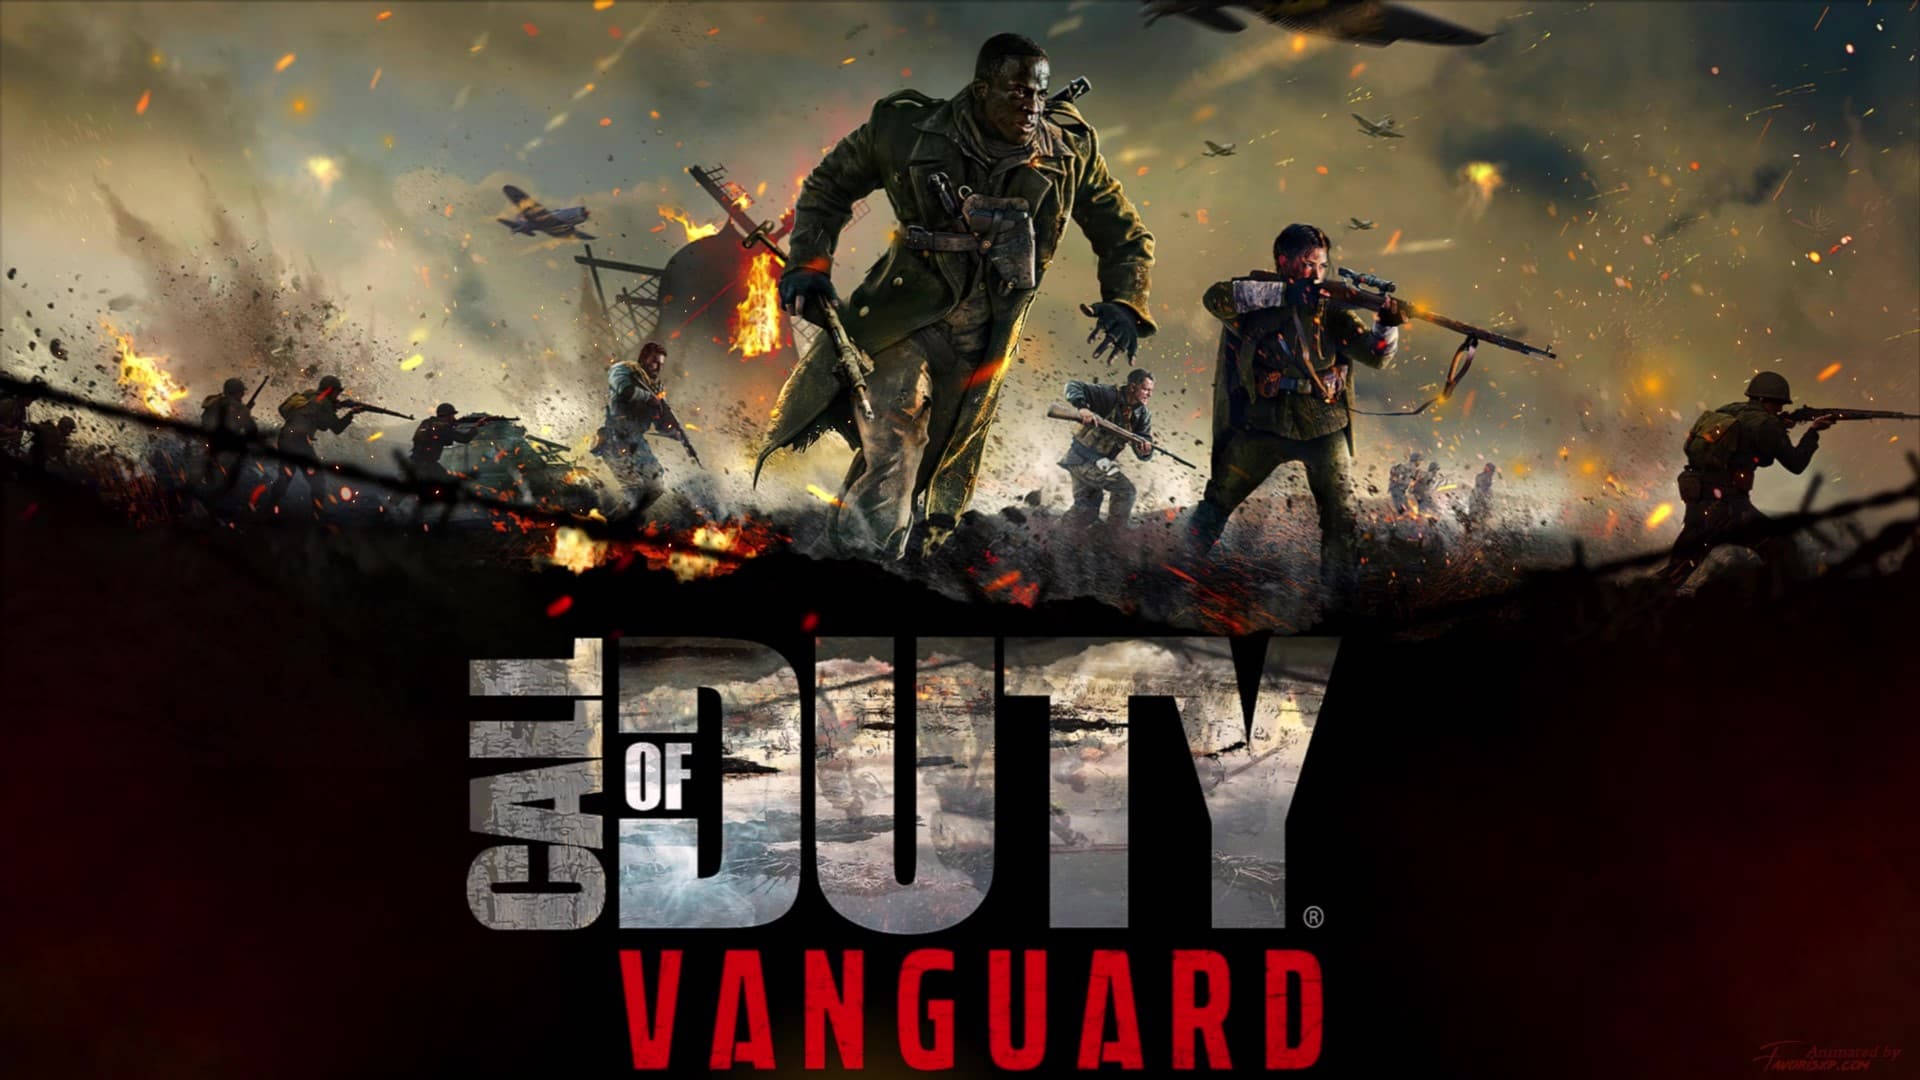 Upplevspänningen Av Strid I Call Of Duty Vanguard. Wallpaper